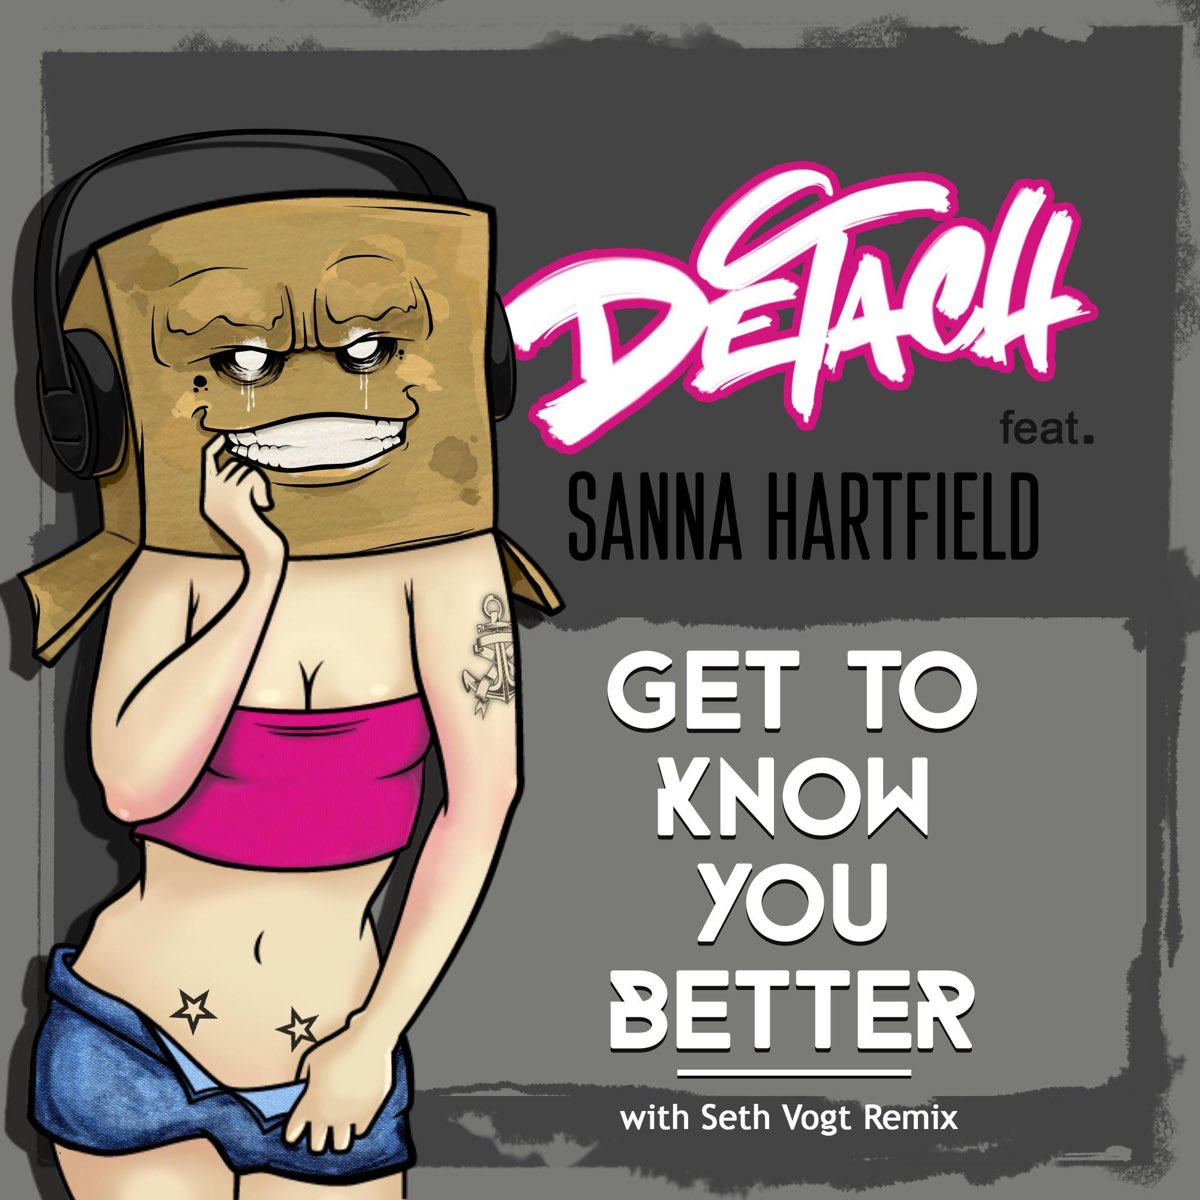 Better feat. Sanna Hartfield. DJ Detach.